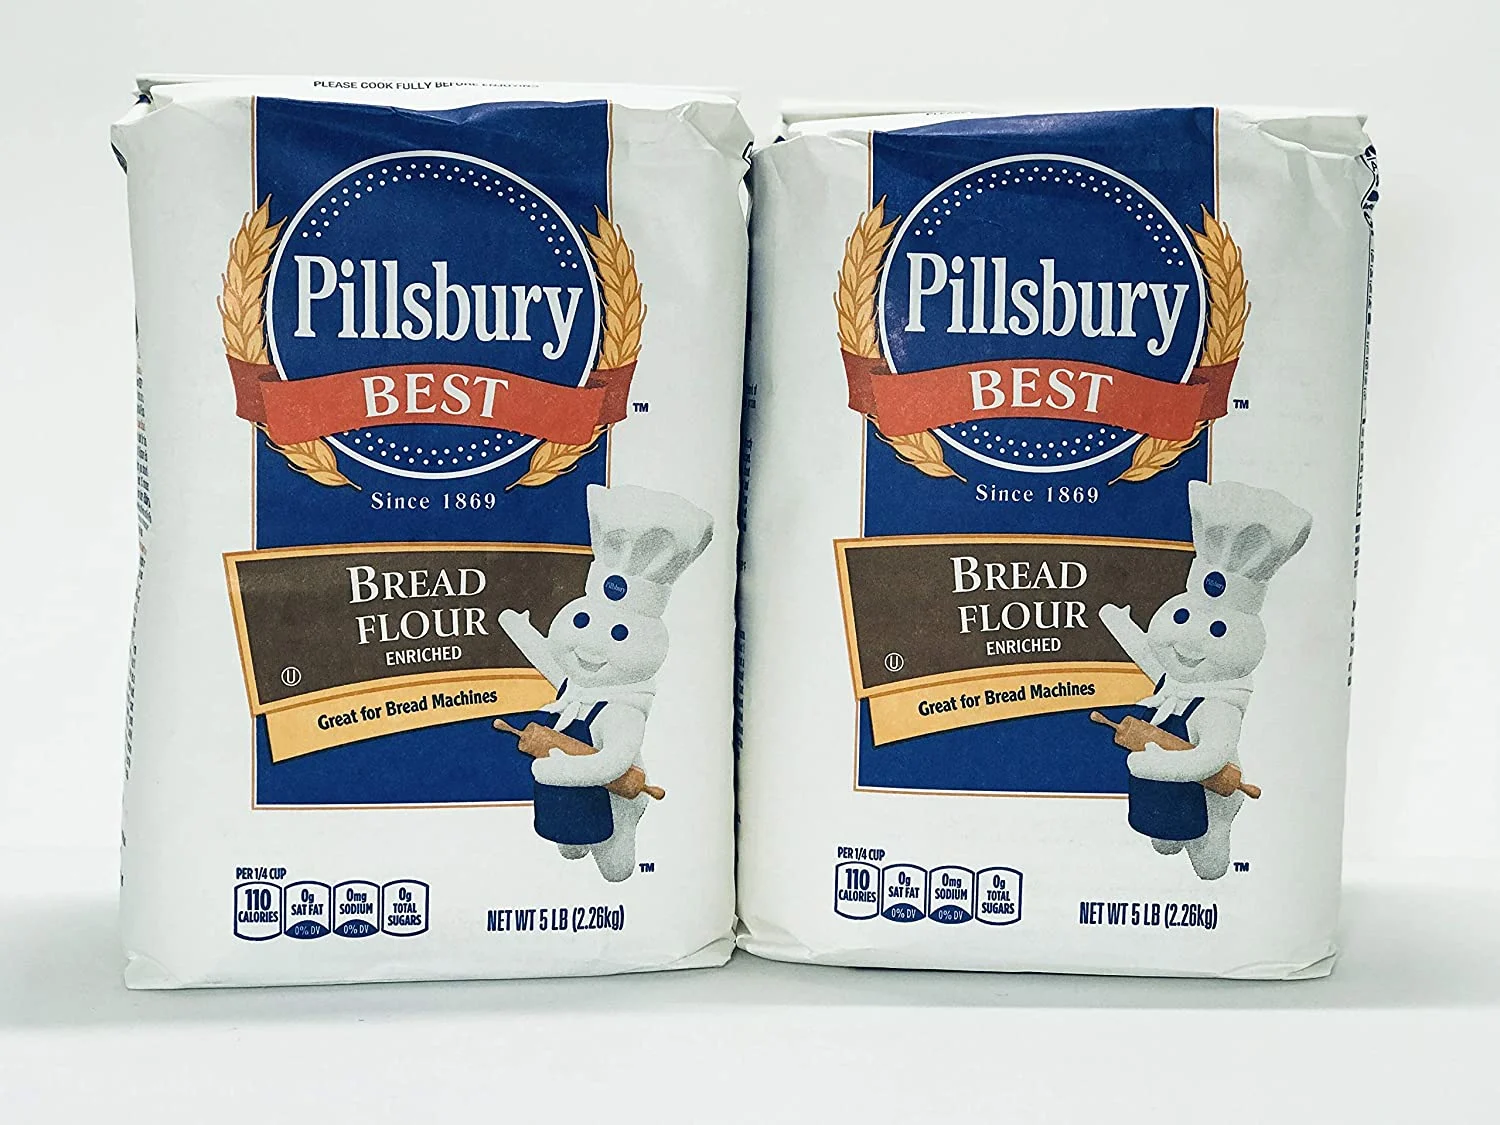 Pillsbury Best - Bread Flour Enriched
